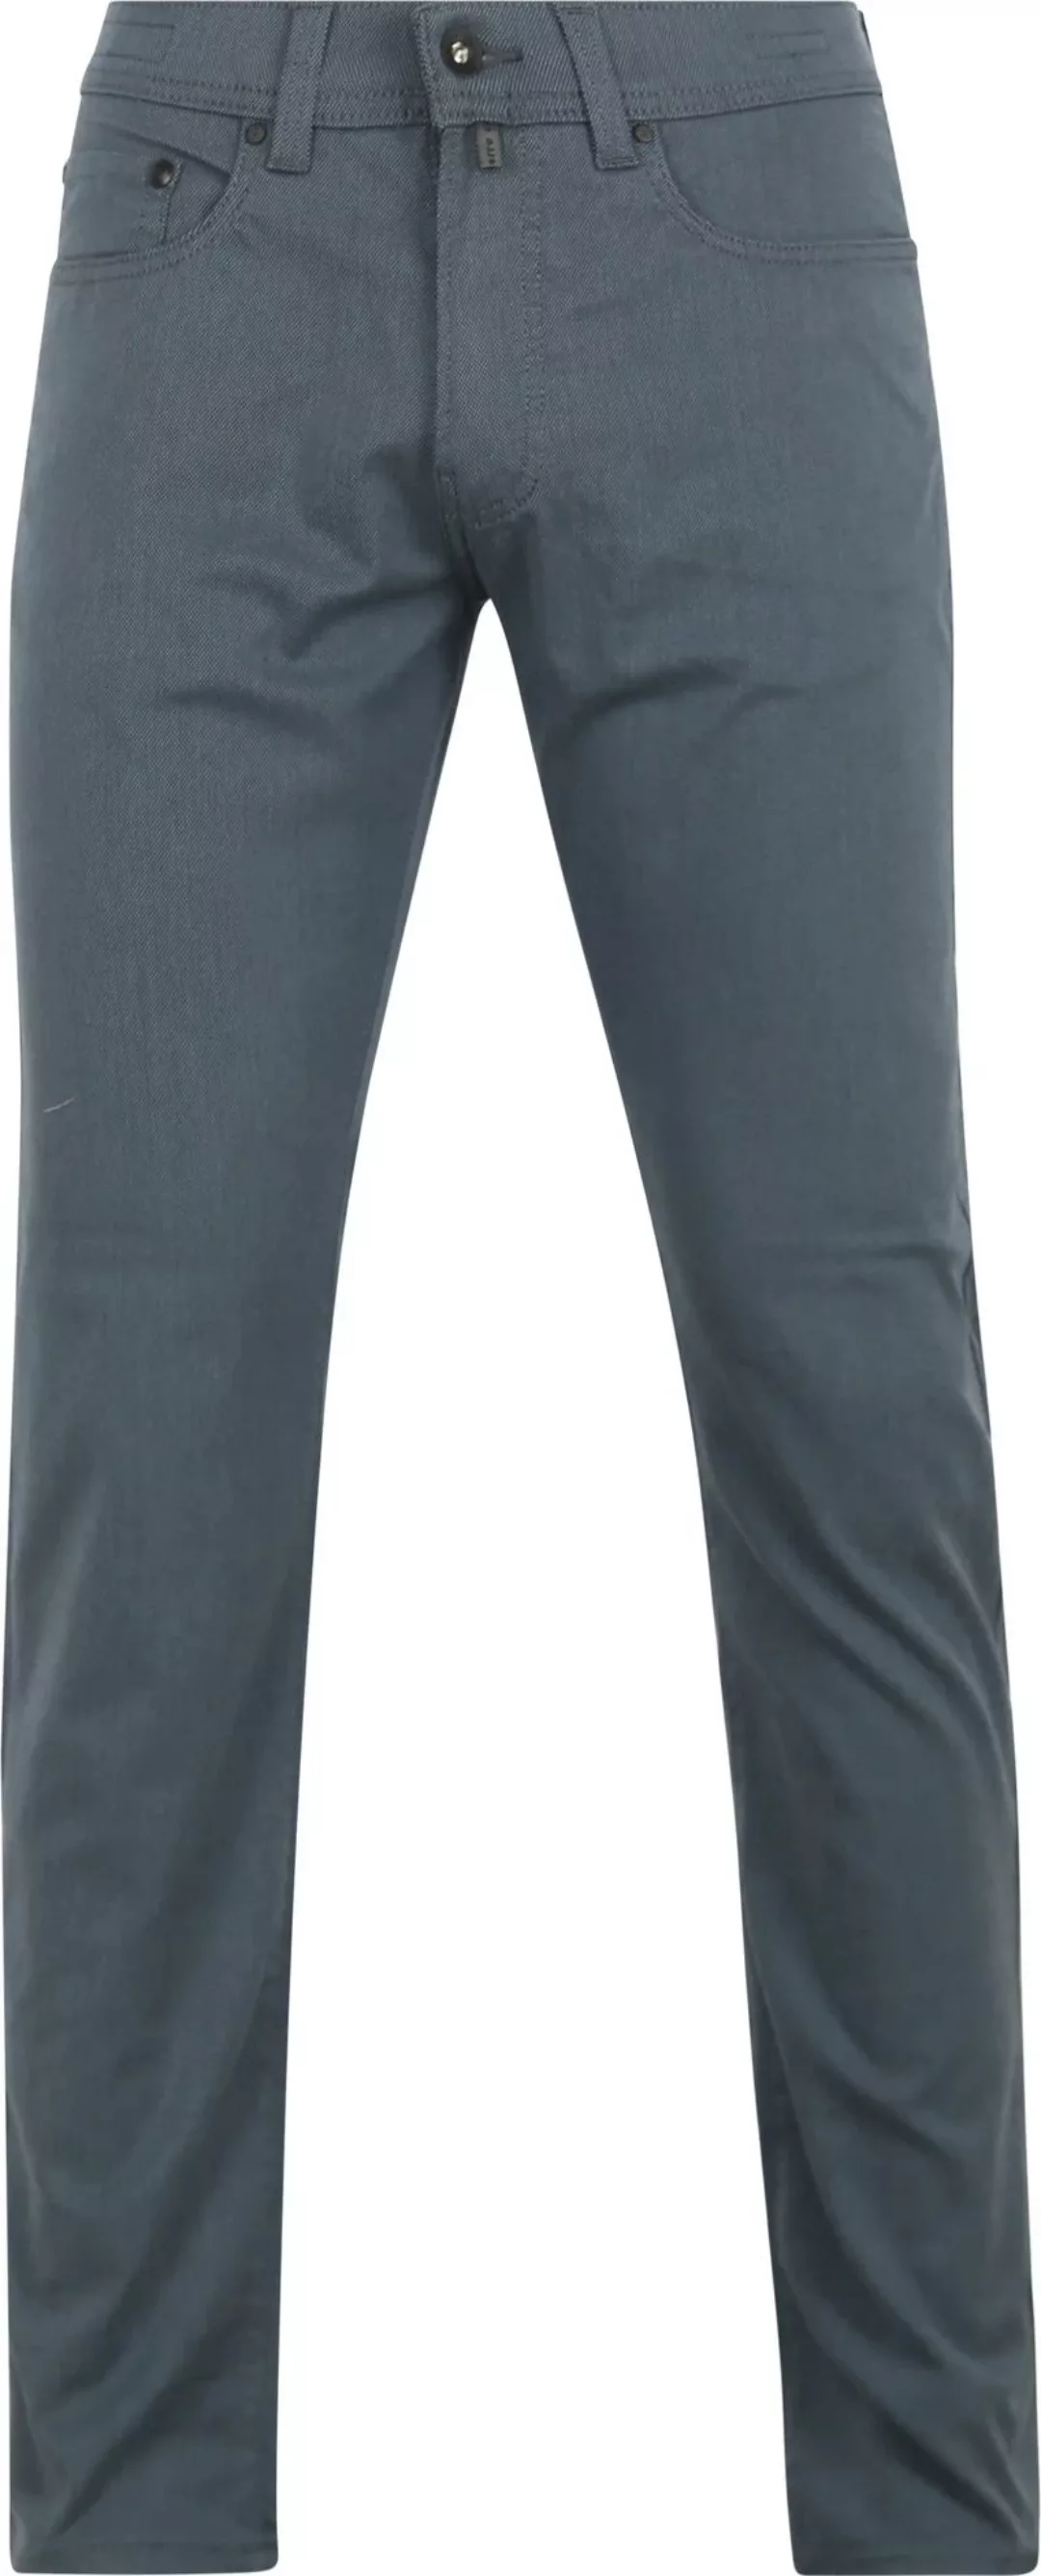 Pierre Cardin Trousers Lyon Tapered Ocean Blau - Größe W 32 - L 32 günstig online kaufen